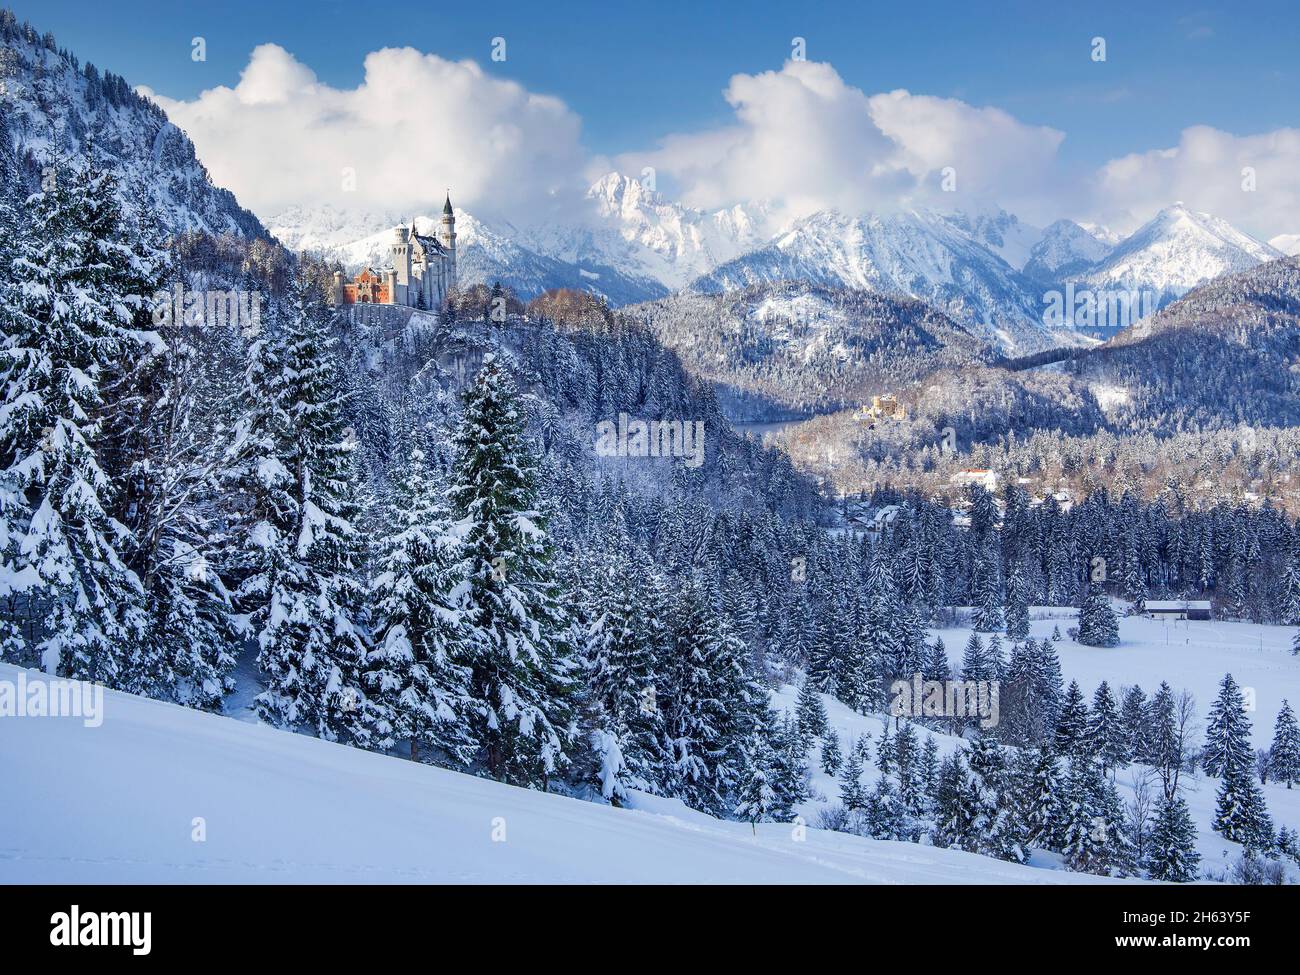 paisaje cubierto de nieve con el castillo de neuschwanstein y el castillo de hohenschwangau contra tannheimer berge,hohenschwangau,romantische strasse,ostallgäu,allgäu,bavaria,alemania Foto de stock